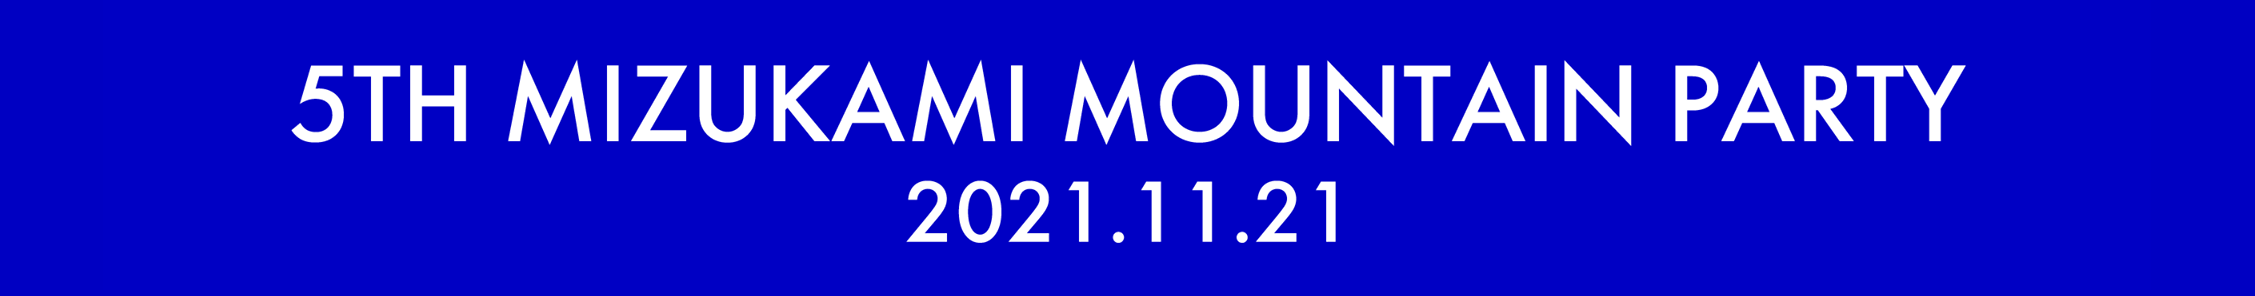 5th MIZUKAMI MOUNTAIN PARTY 2021.11.21